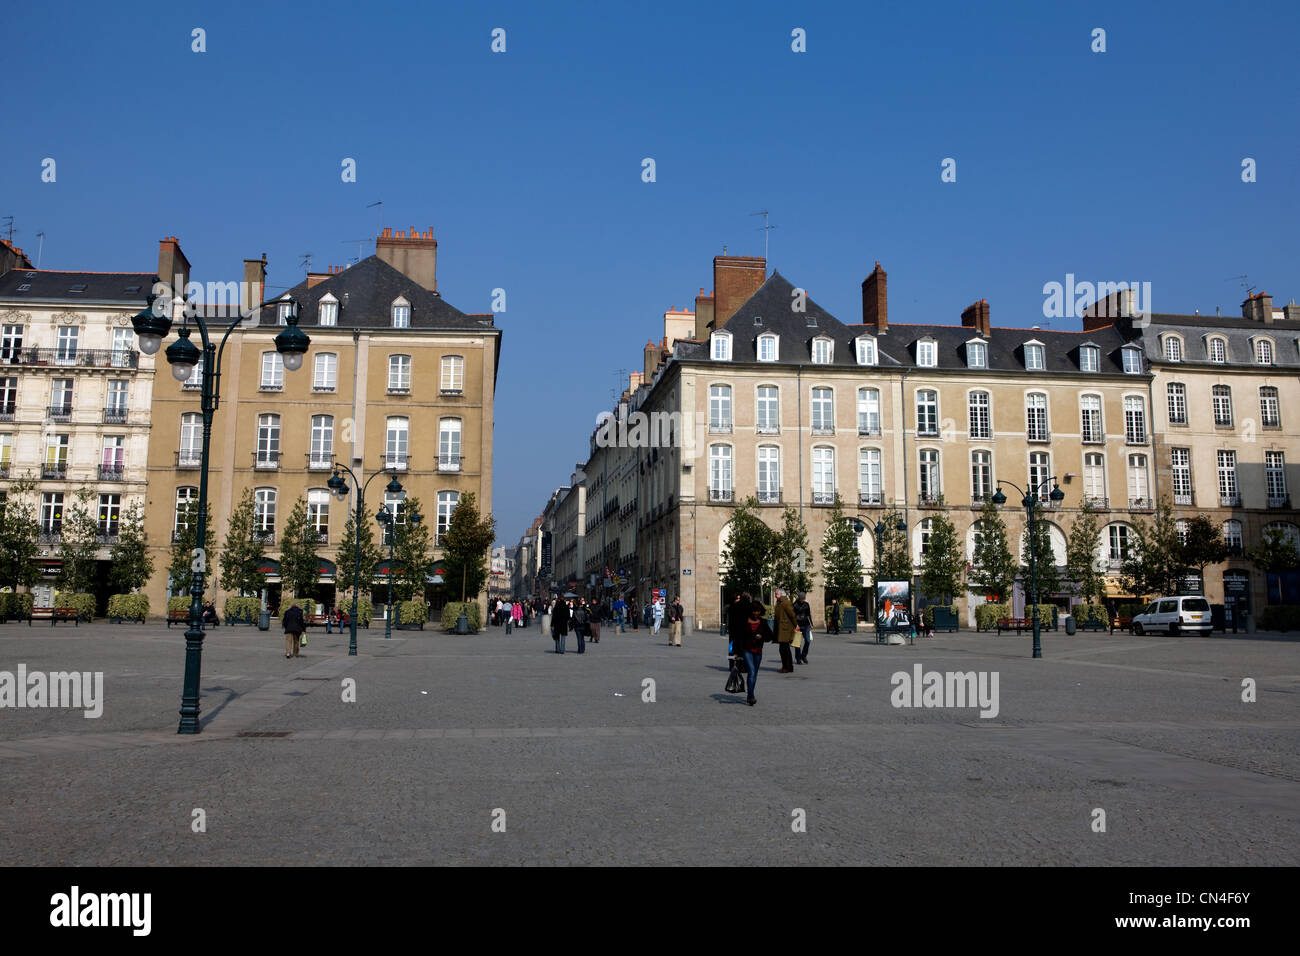 France, Ille et Vilaine, Rennes, Place de la Mairie (Town hall square) Stock Photo